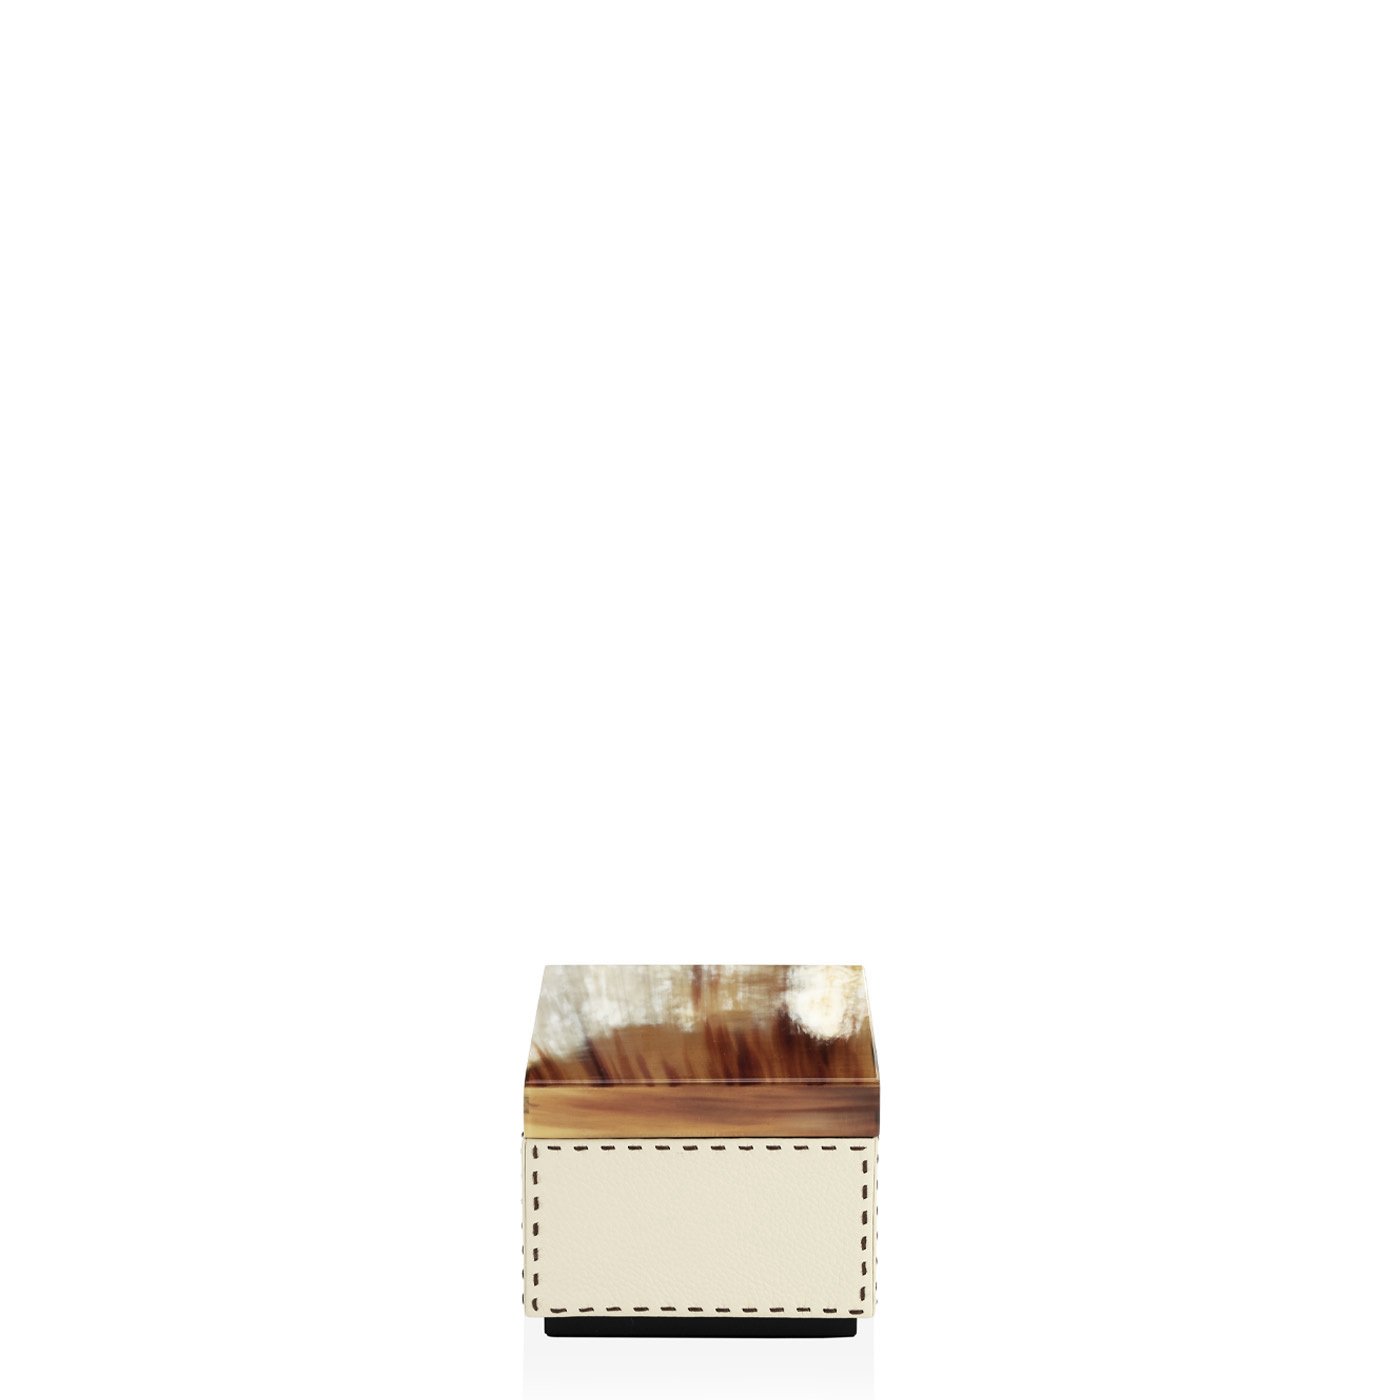 Cornici e scatole - Ottavia scatola in corno e pelle martellata Ice-cream mod. 4466 - Arcahorn